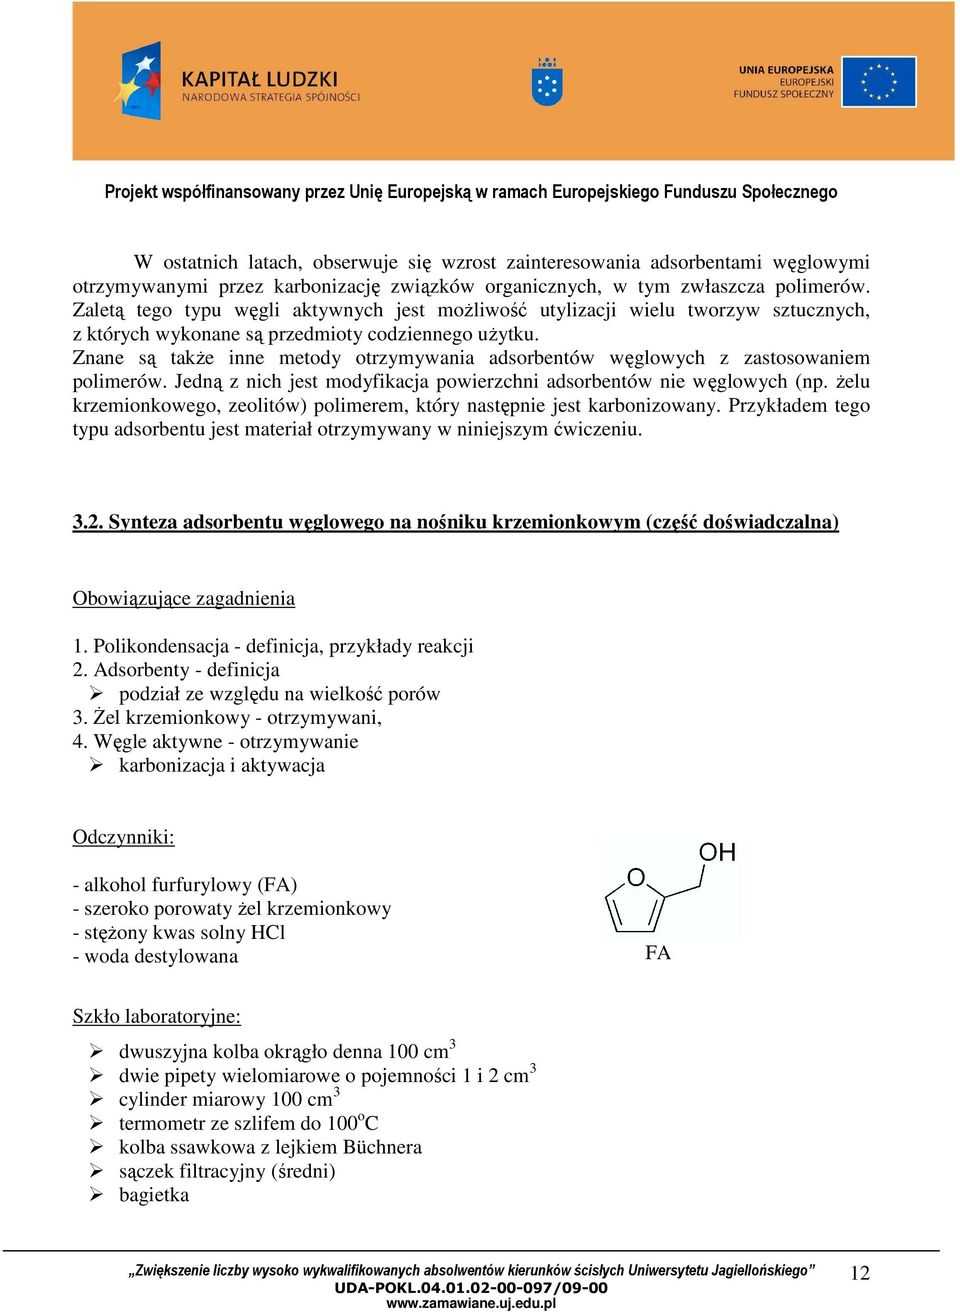 Znane są takŝe inne metody otrzymywania adsorbentów węglowych z zastosowaniem polimerów. Jedną z nich jest modyfikacja powierzchni adsorbentów nie węglowych (np.